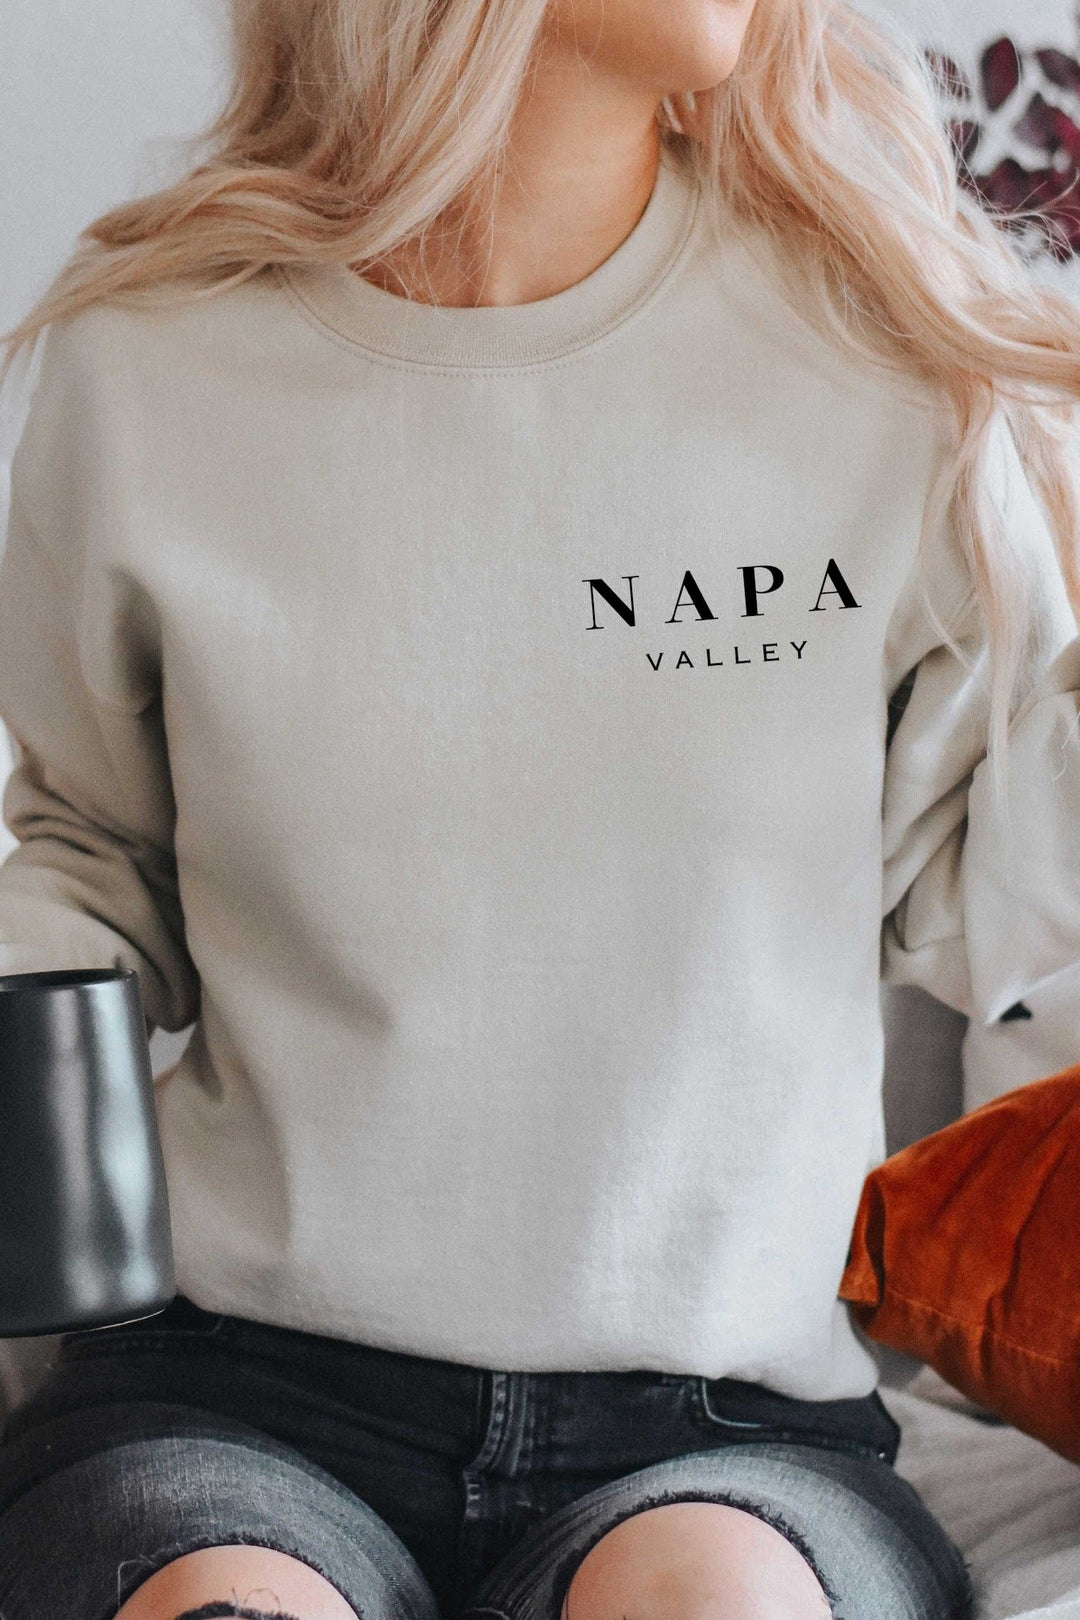 The Napa Valley Pocket Printed Crewneck Sweatshirt